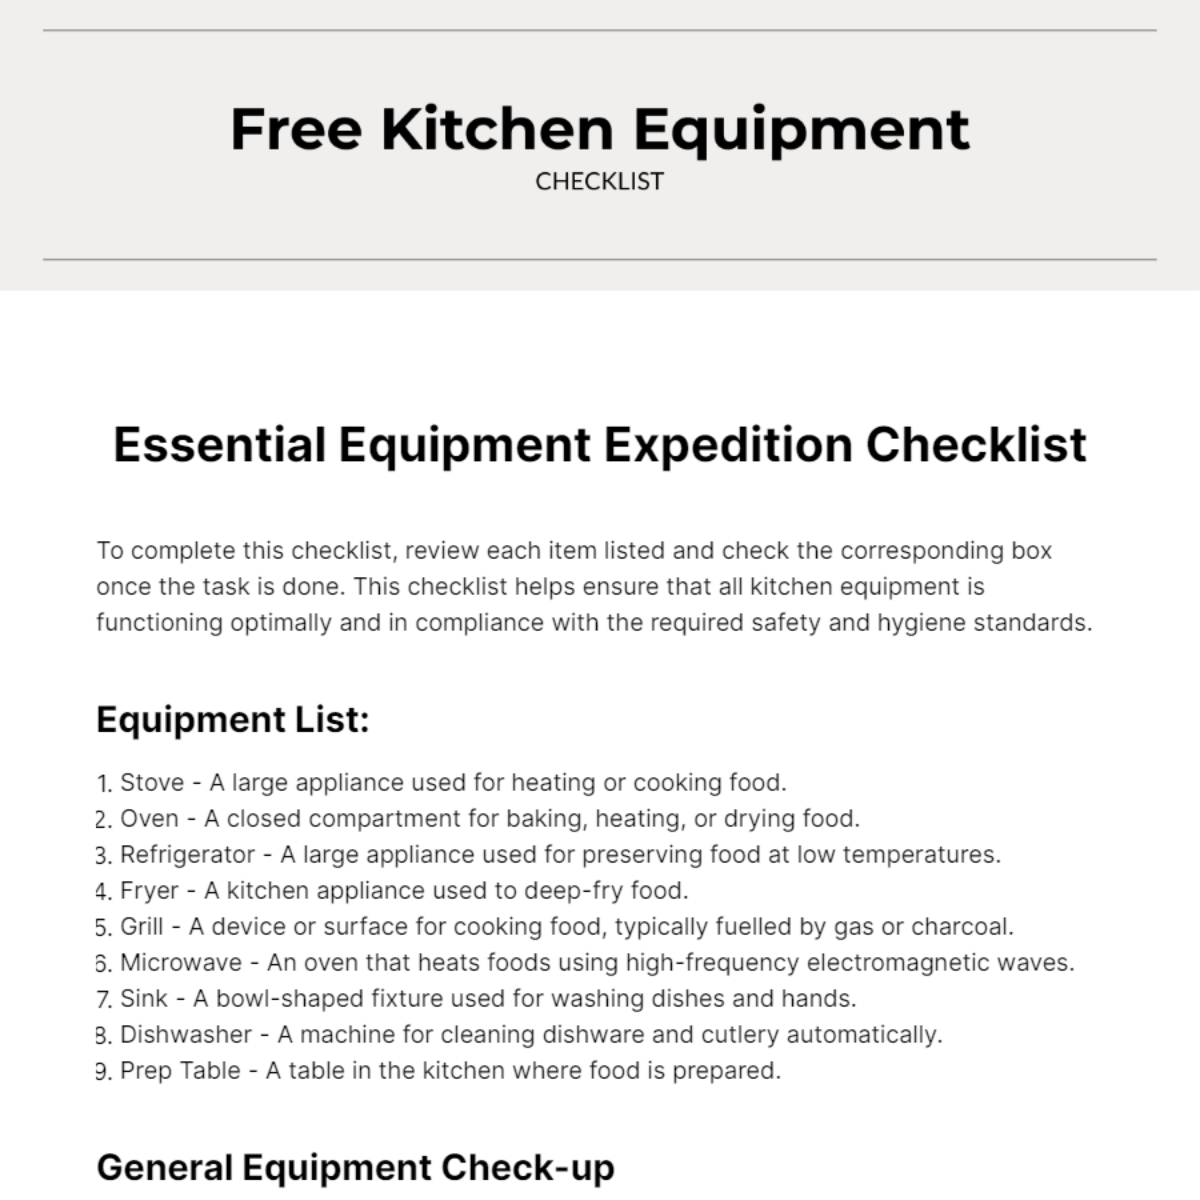 Free Kitchen Equipment Checklist Template